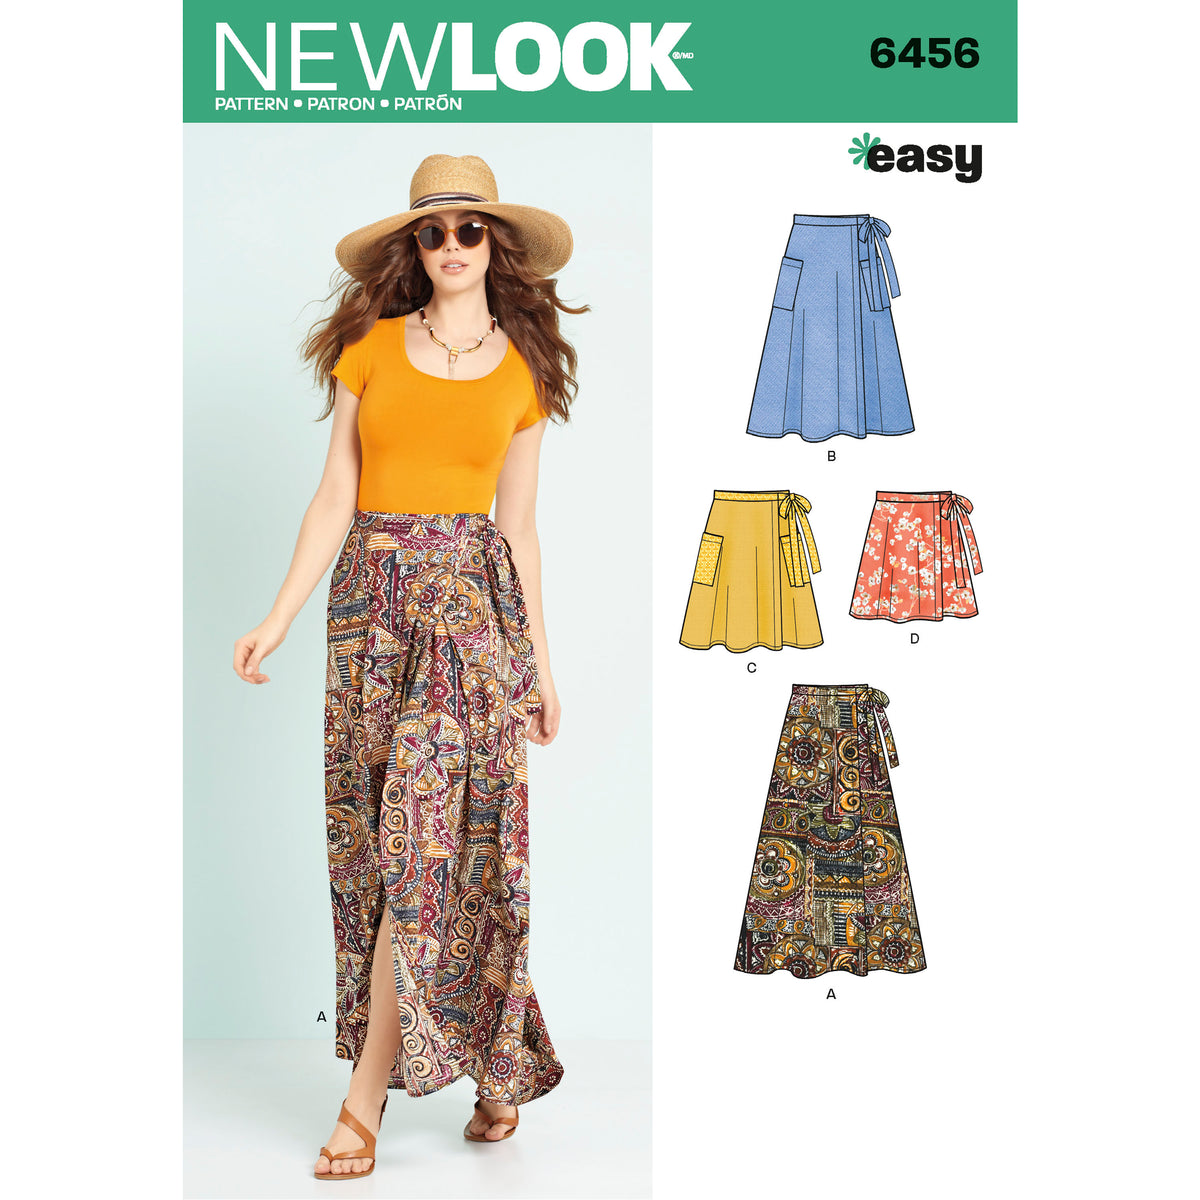 New Look Sewing Pattern 6456 - Pound Fabrics